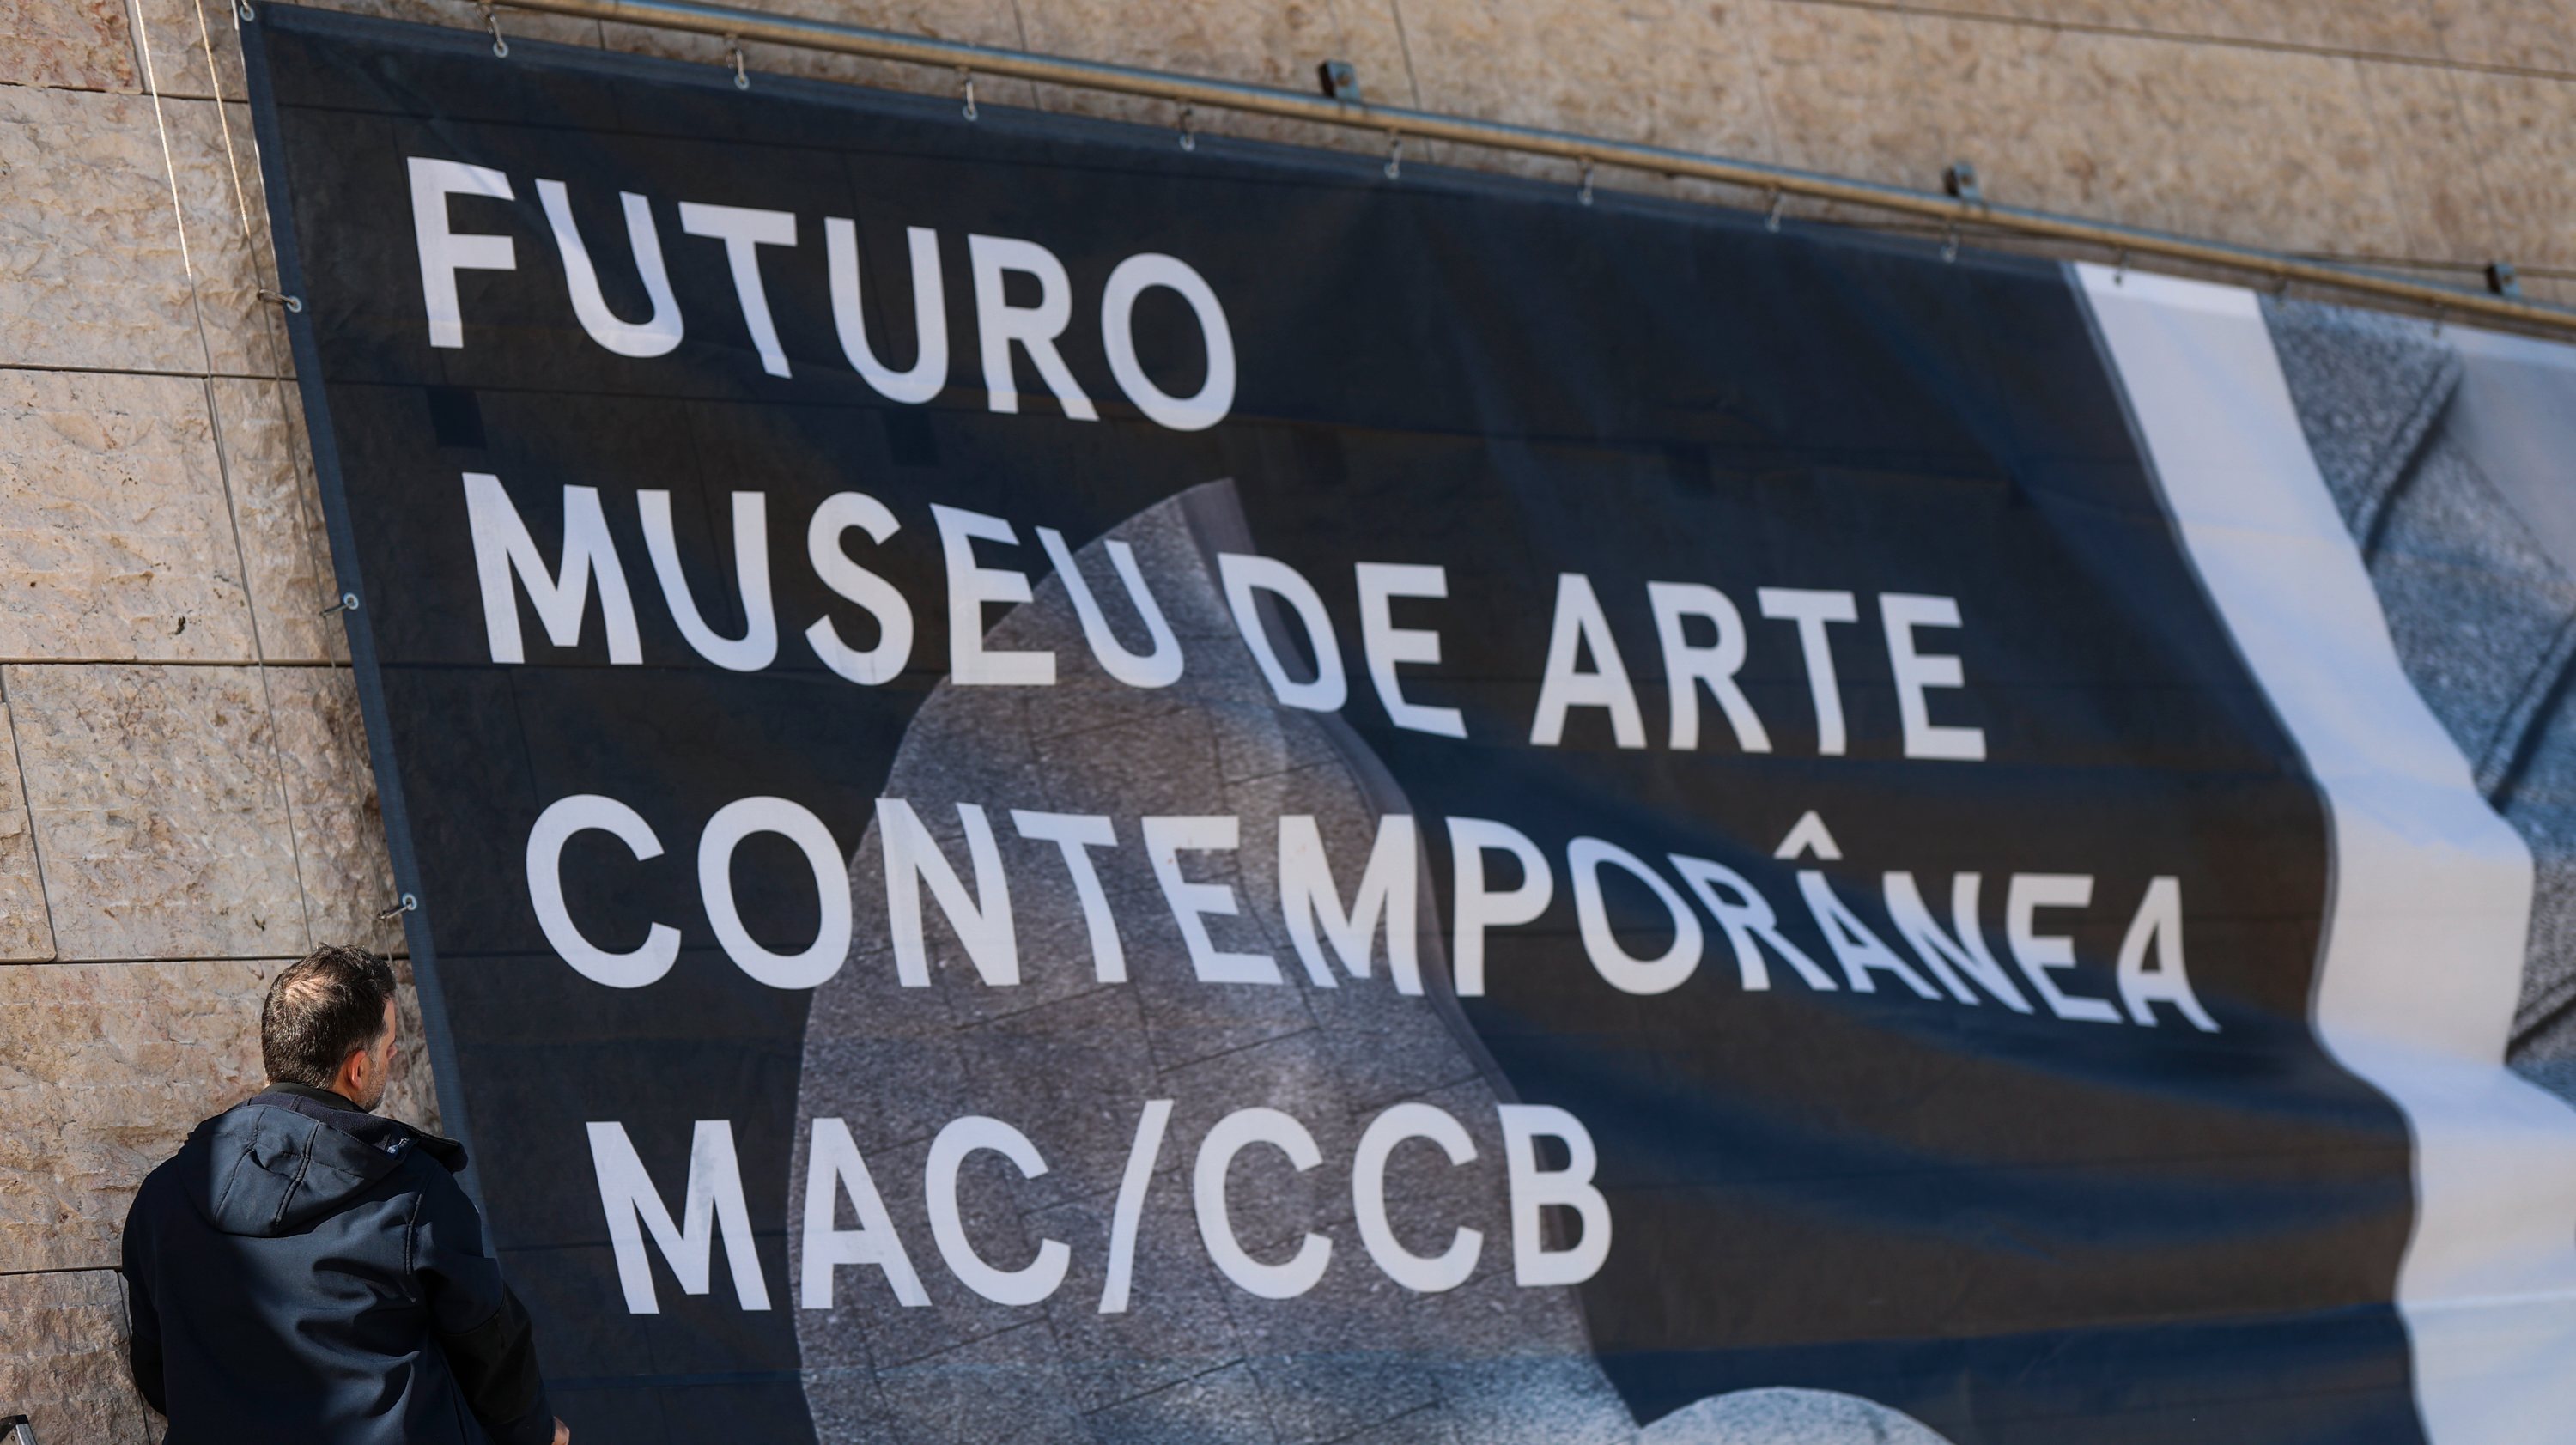 Na versão abreviada do nome, o novo museu assume a identidade MAC/CCB